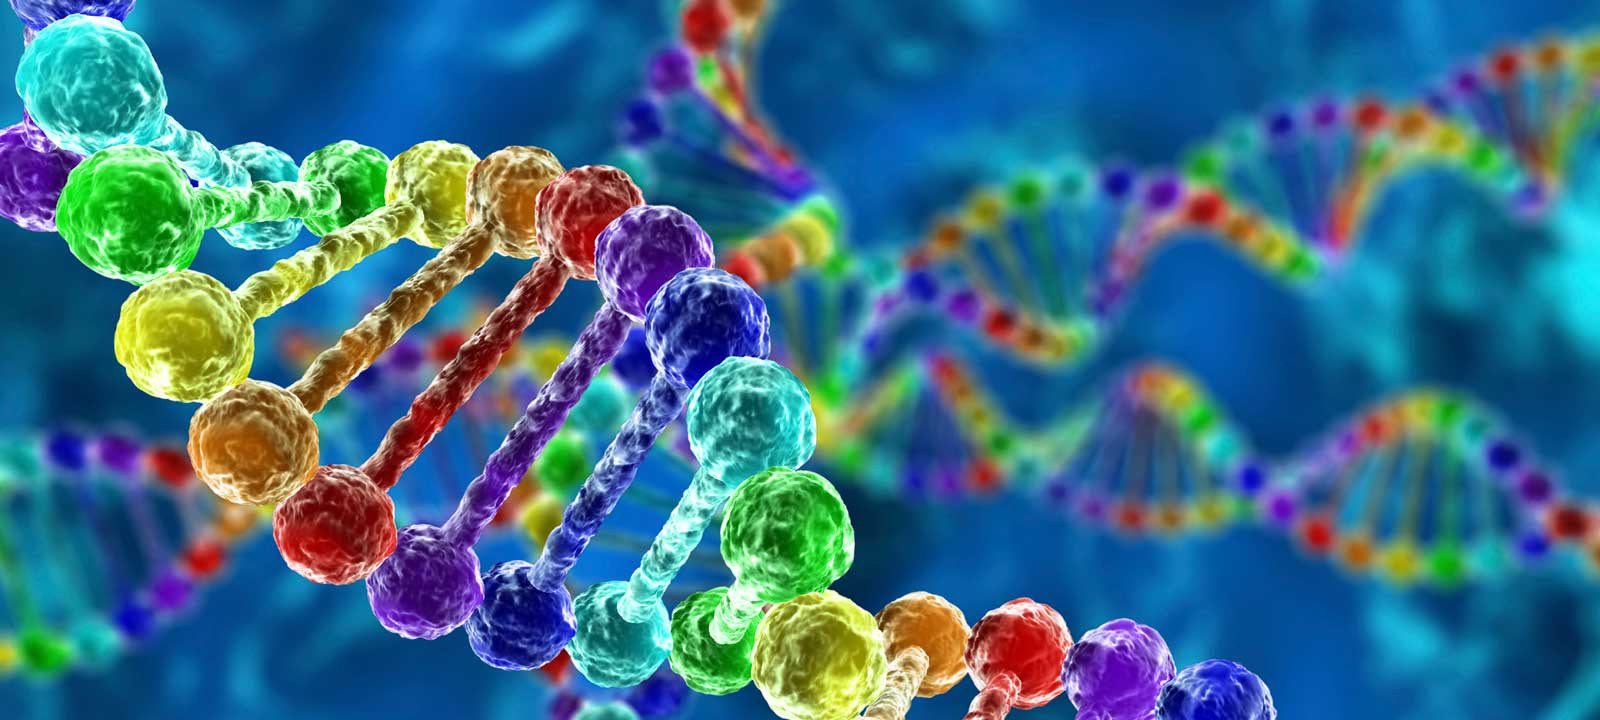 ژن سازه آمن بیوتکنولوژی ایران ژنومیکس سنتز ژنتیکی